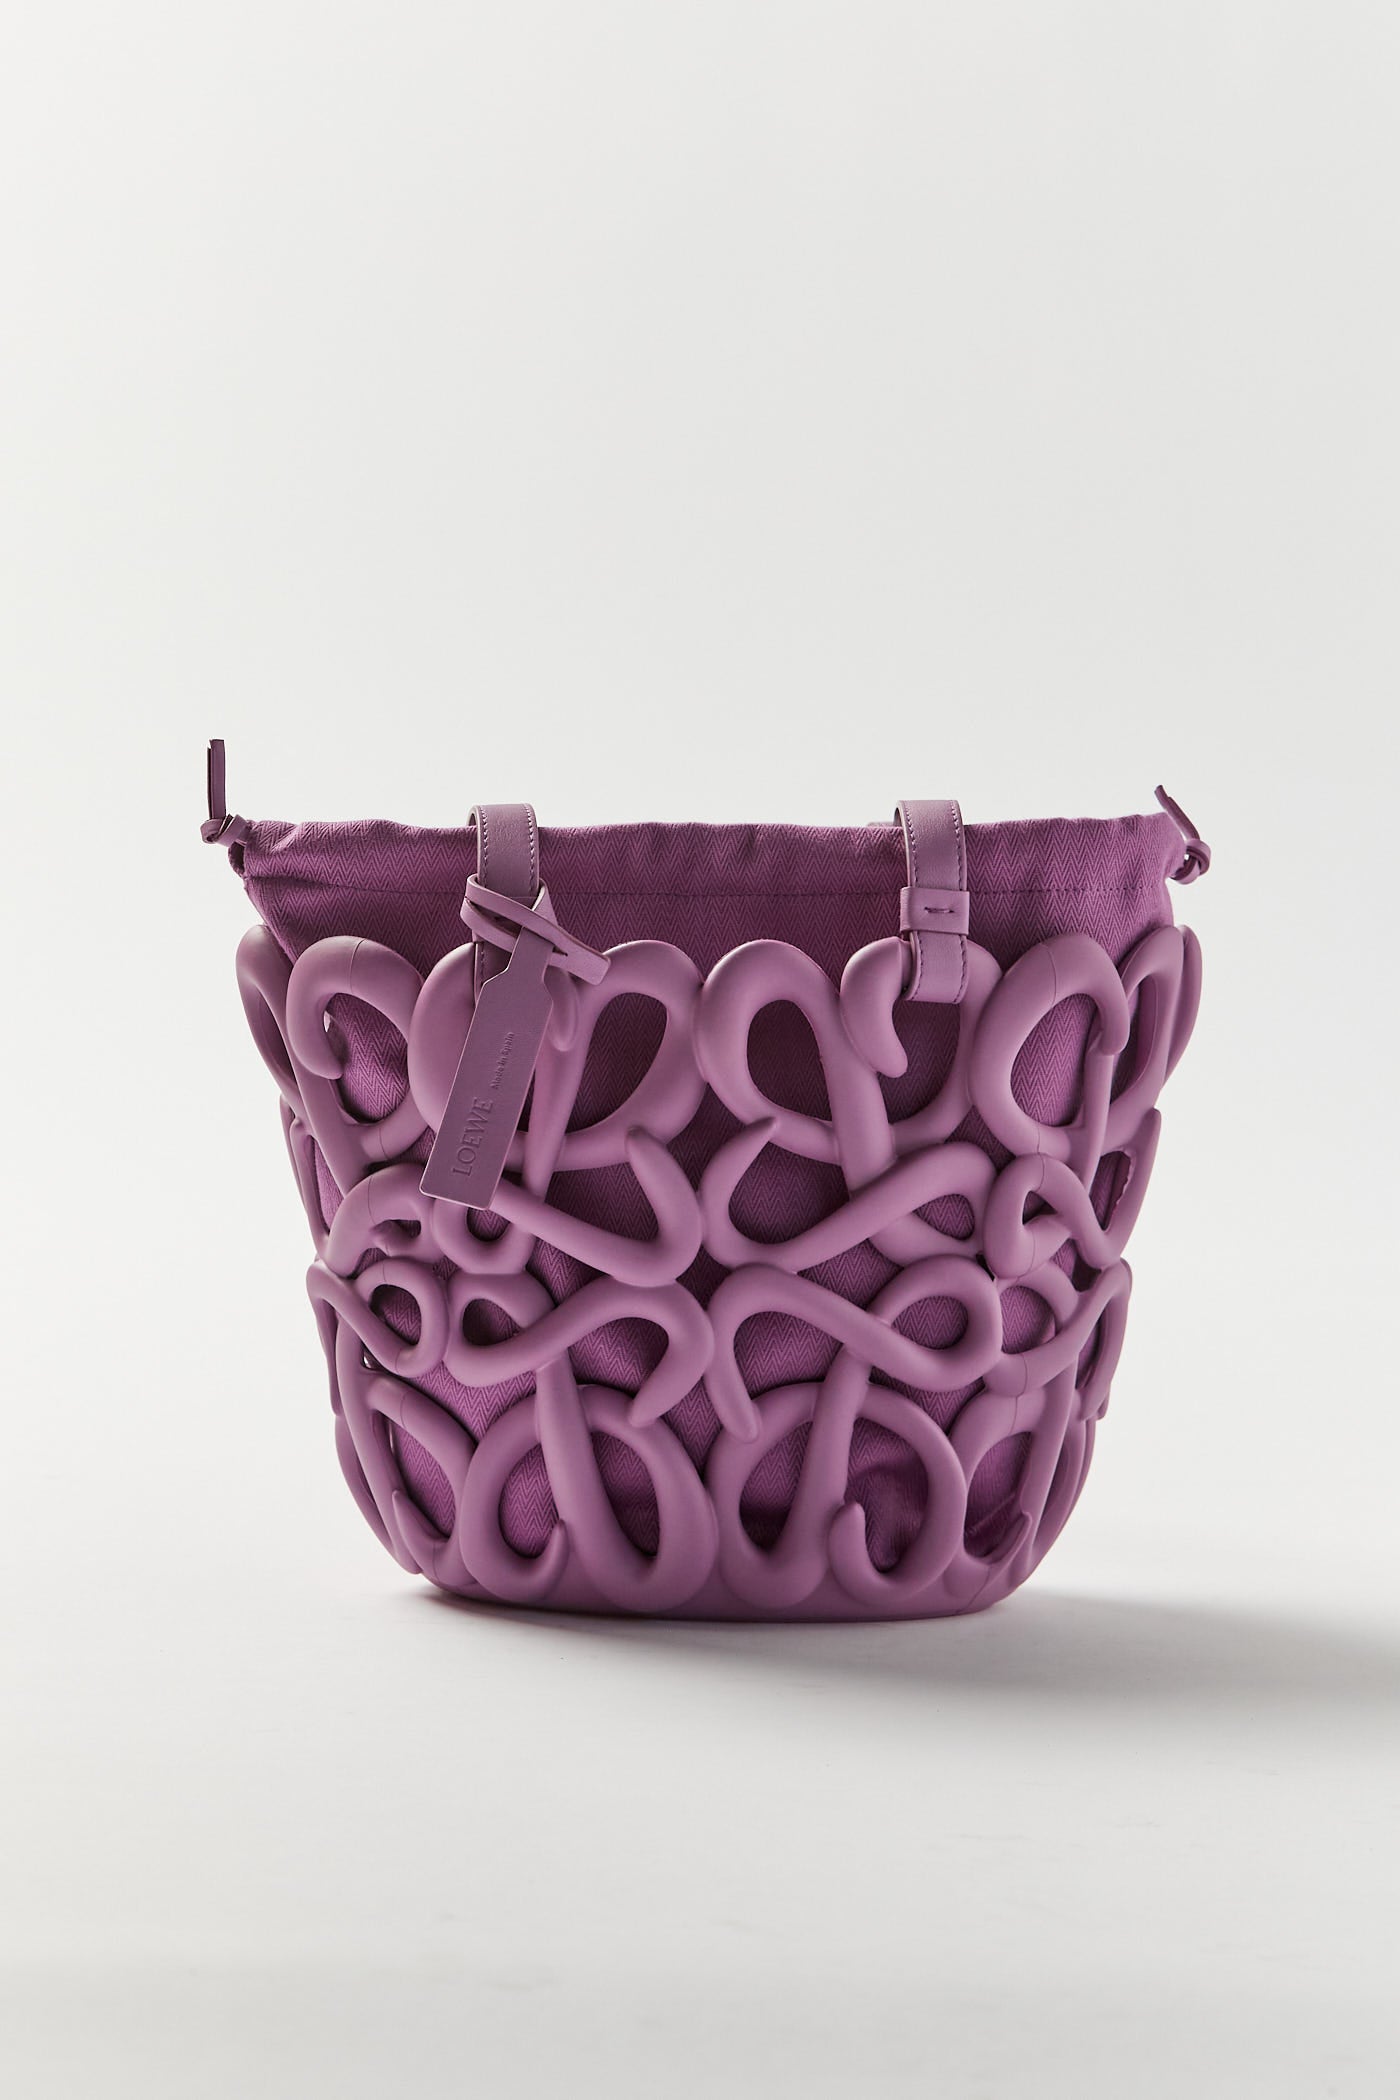 Loewe - Anagram Purple Basket Bag